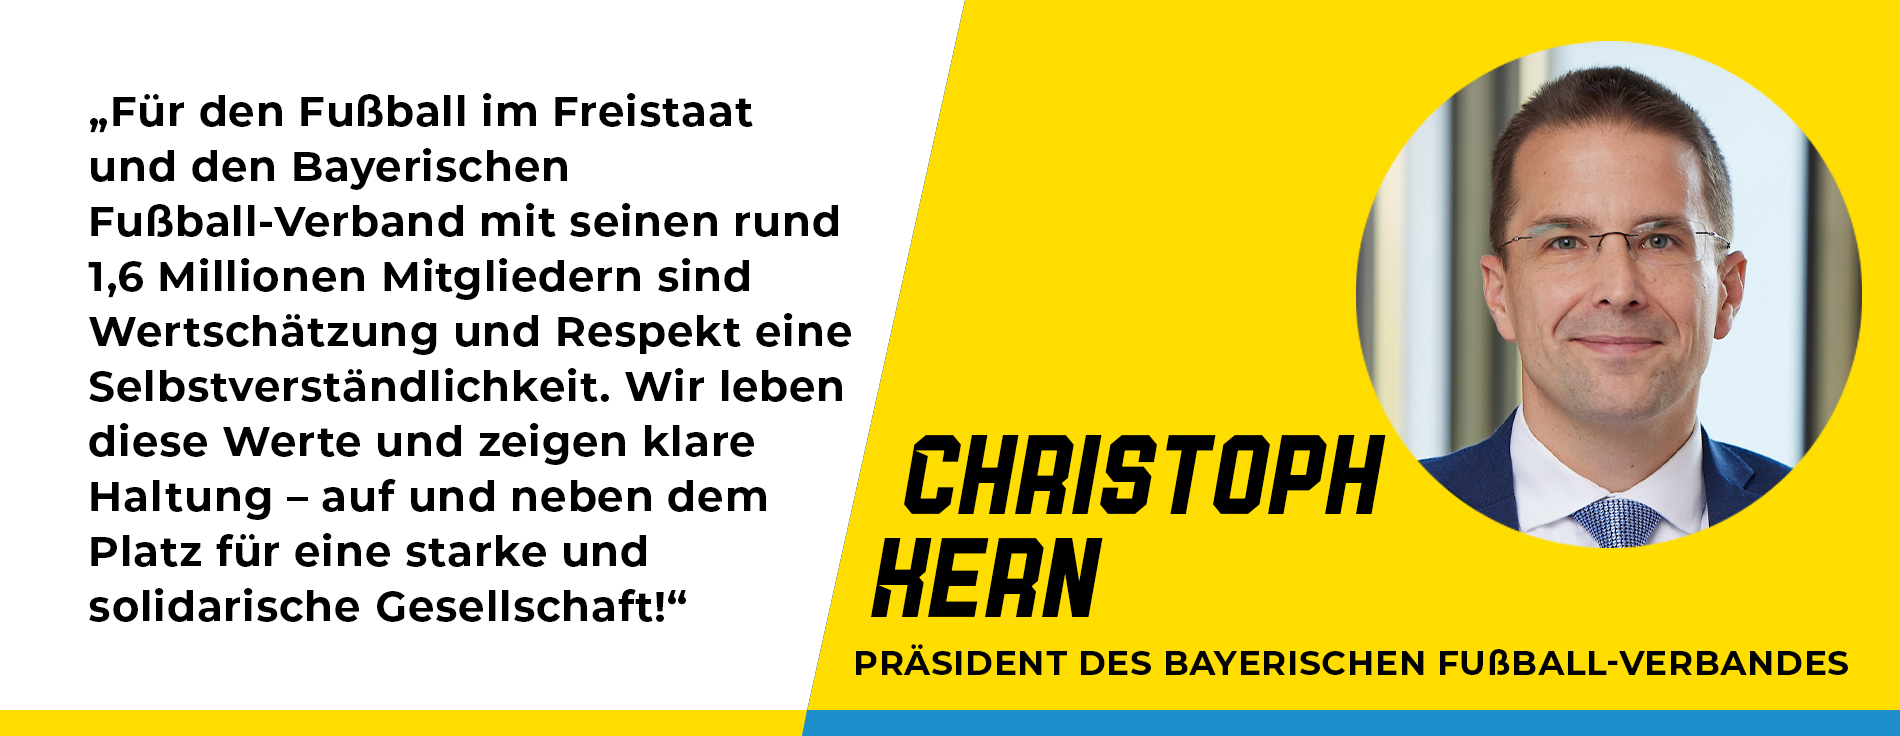 Statement Christoph Kern, Präsident des Bayerischen Fußball-Verbandes: „Für den Fußball im Freistaat und den Bayerischen Fußball-Verband mit seinen rund 1,6 Millionen Mitgliedern sind Wertschätzung und Respekt eine Selbstverständlichkeit. Wir leben diese Werte und zeigen klare Haltung – auf und neben dem Platz für eine starke und solidarische Gesellschaft!“